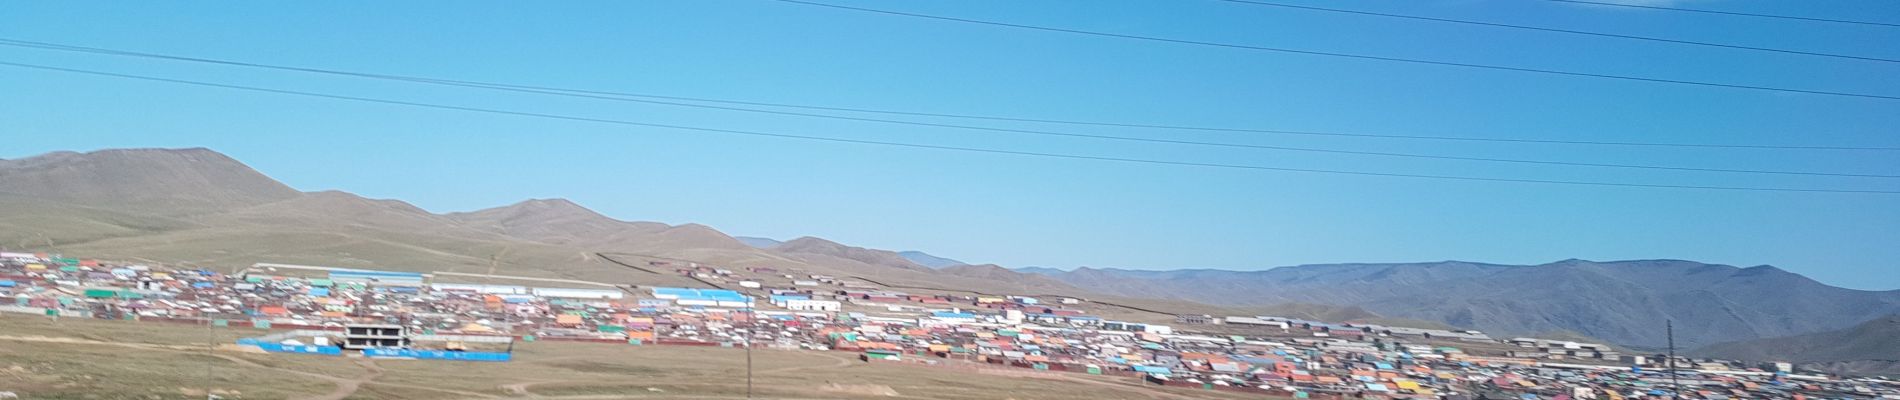 Randonnée Voiture Unknown - Mongolie111 - Photo